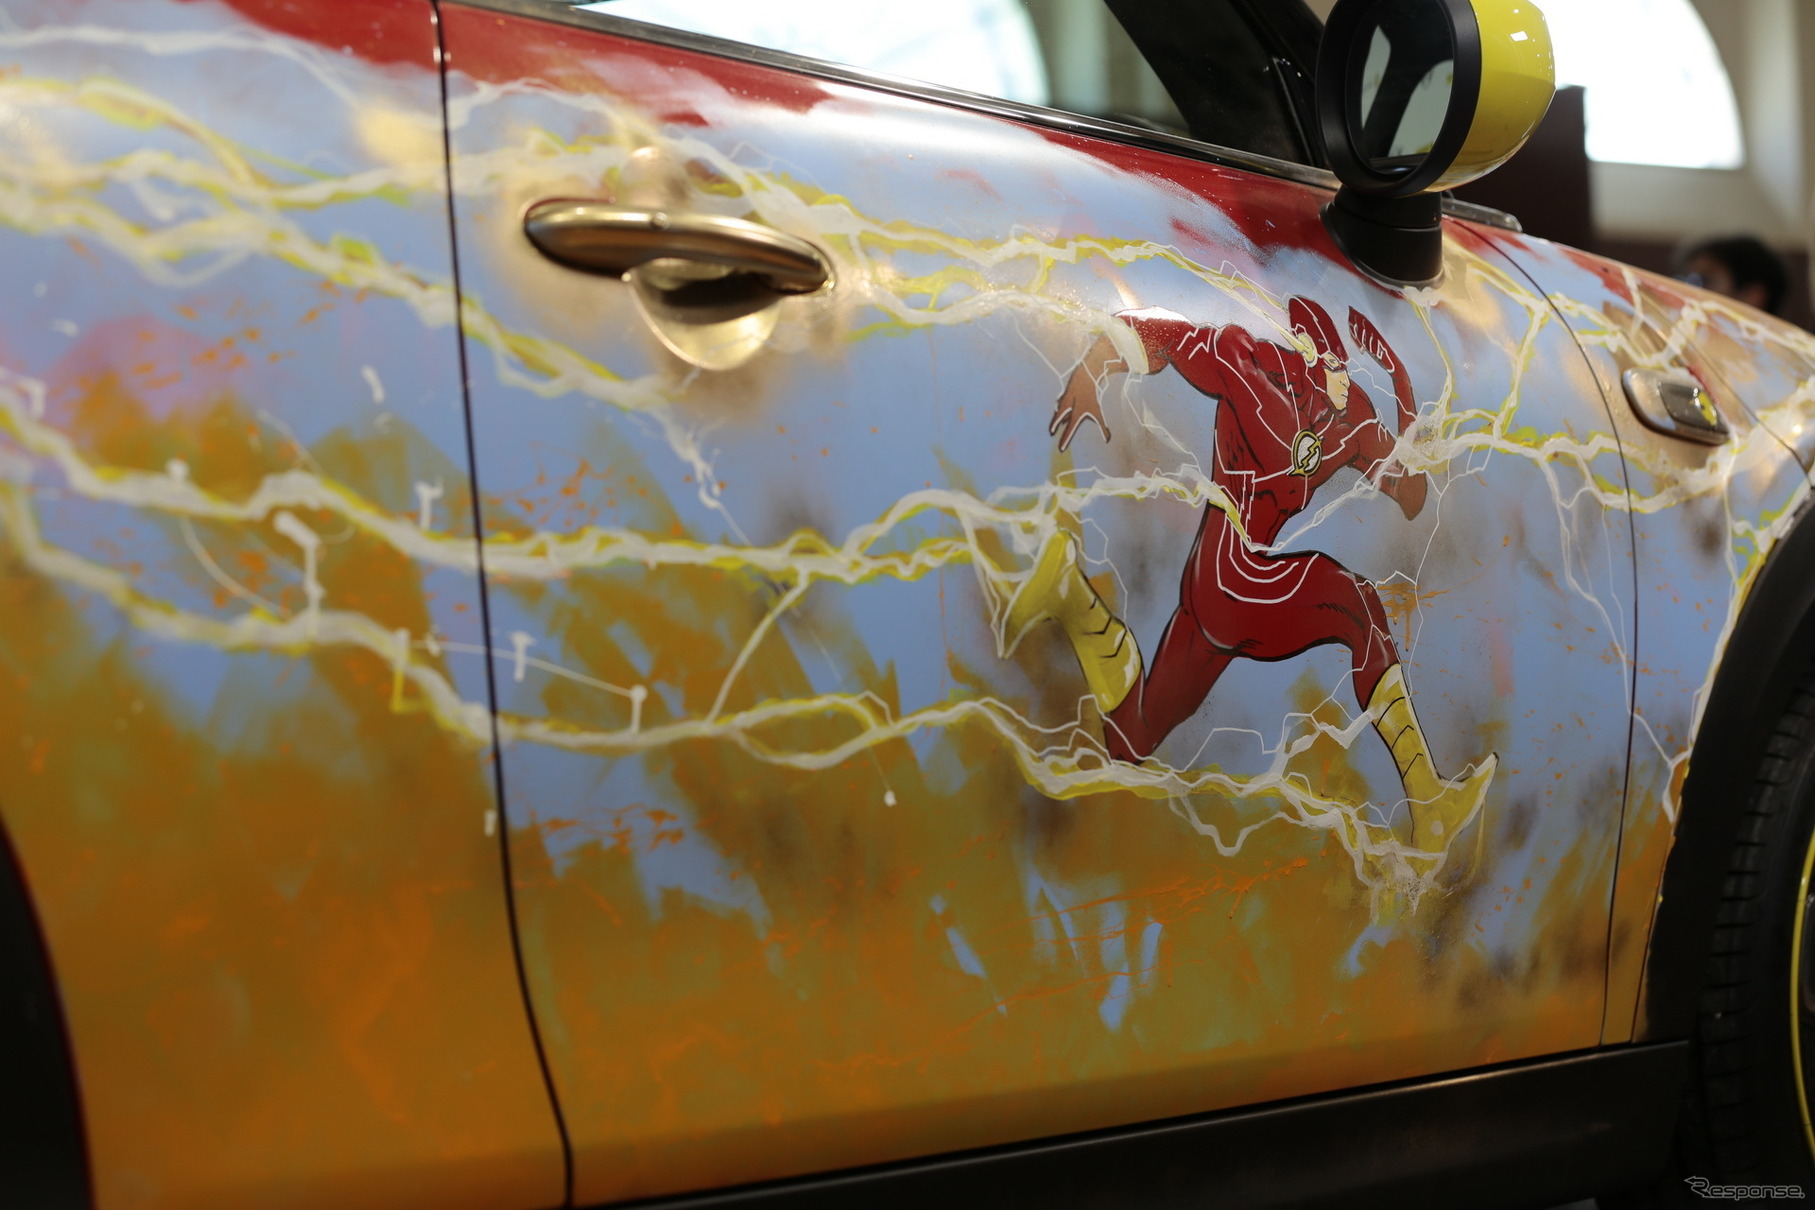 MINI クーパーSE のアートカー。漫画『ザ・フラッシュ』の世界観を表現